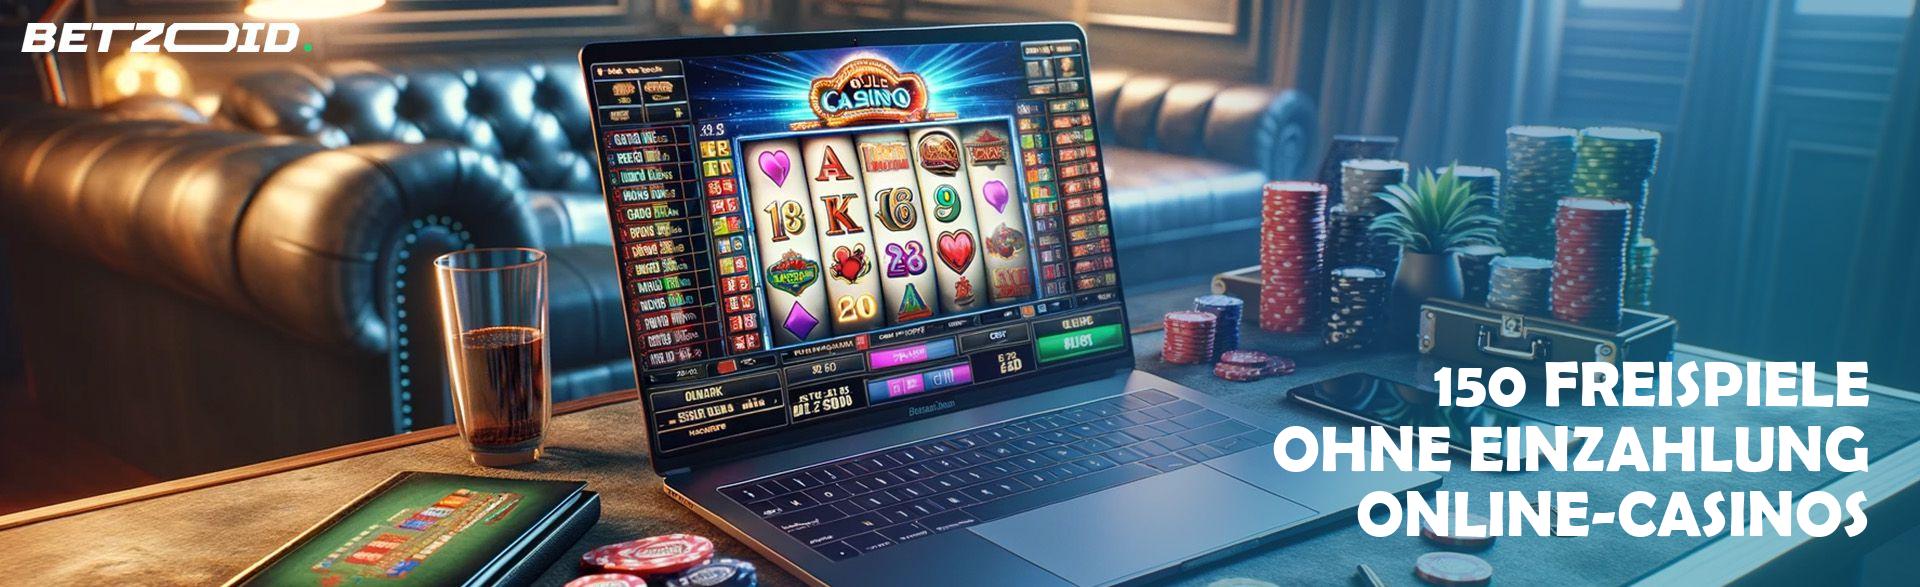 150 Freispiele ohne Einzahlung Online-Casinos.